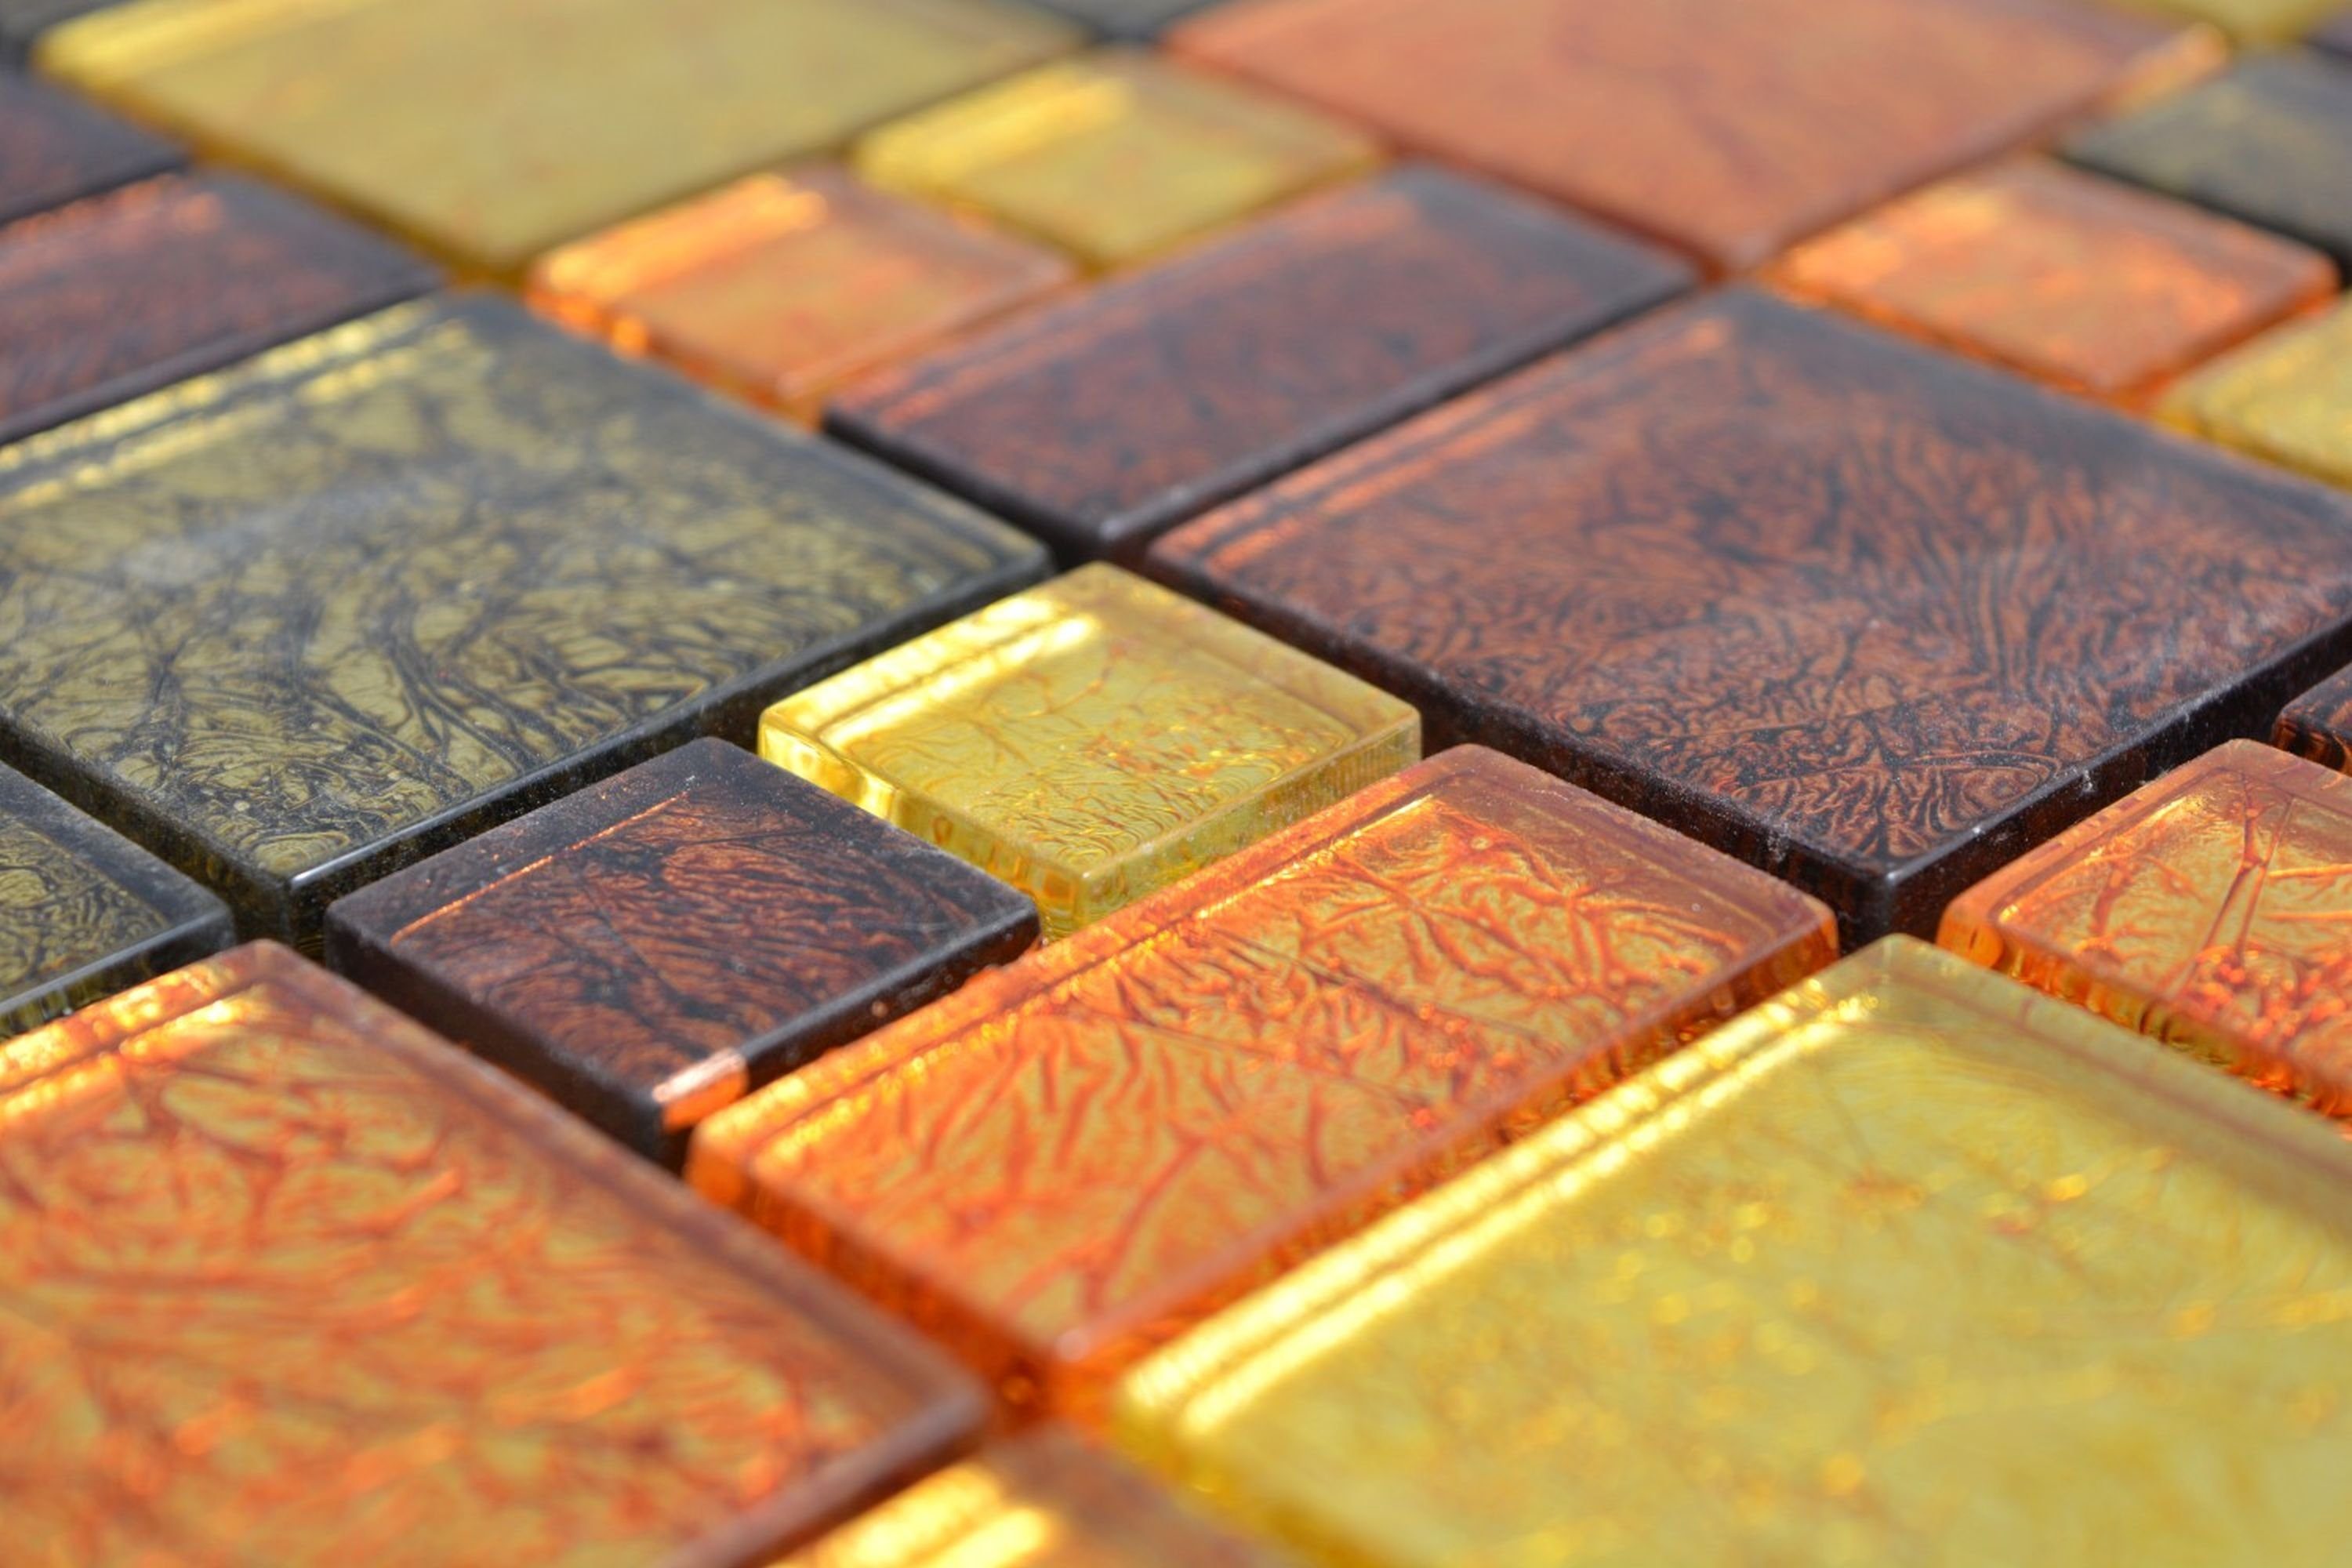 Mosani Mosaikfliesen Glasmosaik gold Mosaik Kombintation Fliesenspiegel orange Struktur